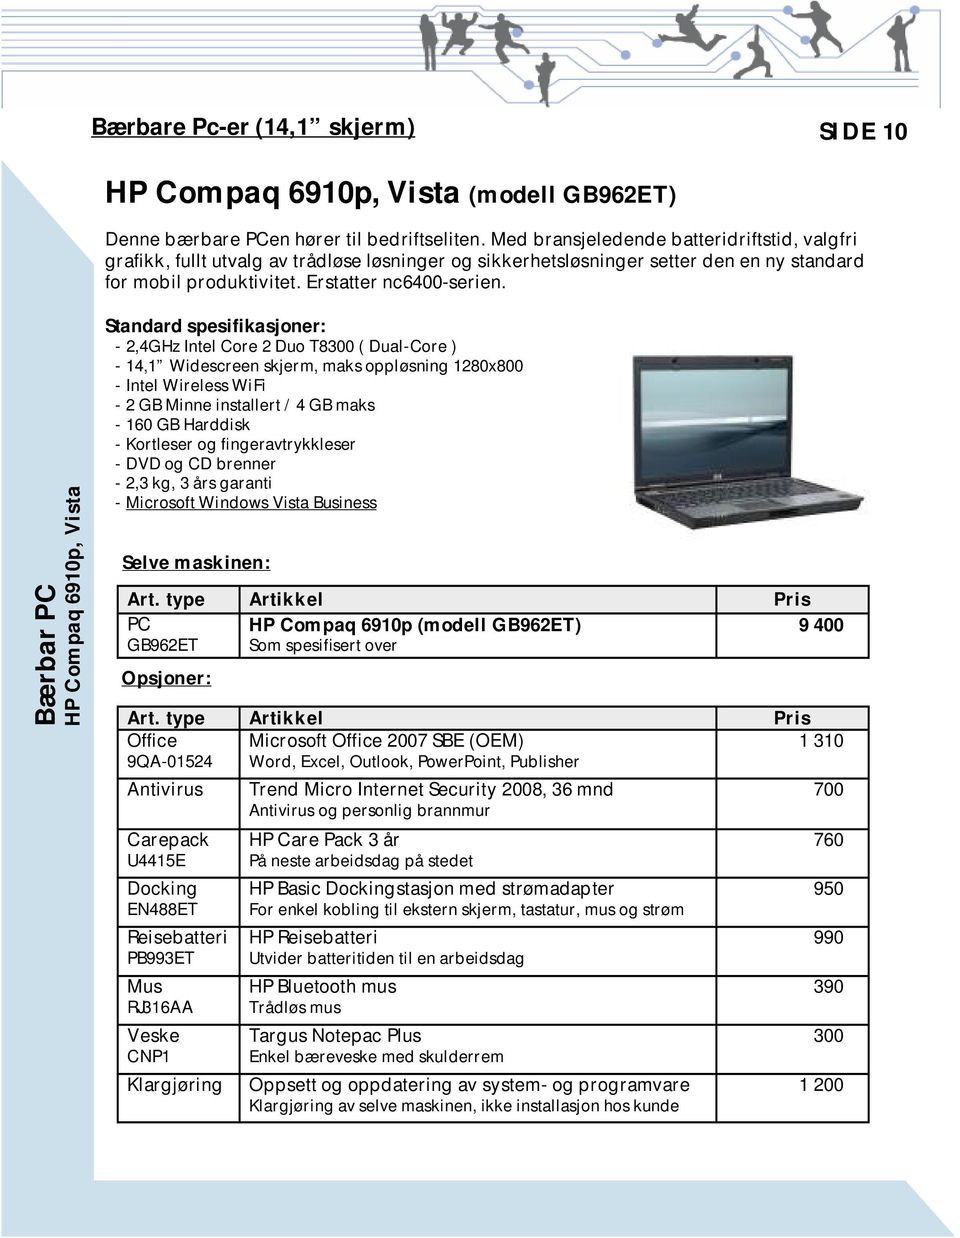 Bærbar PC HP Compaq 6910p, Vista Standard spesifikasjoner: - 2,4GHz Intel Core 2 Duo T8300 ( Dual-Core ) - 14,1 Widescreen skjerm, maks oppløsning 1280x800 - Intel Wireless WiFi - 2 GB Minne